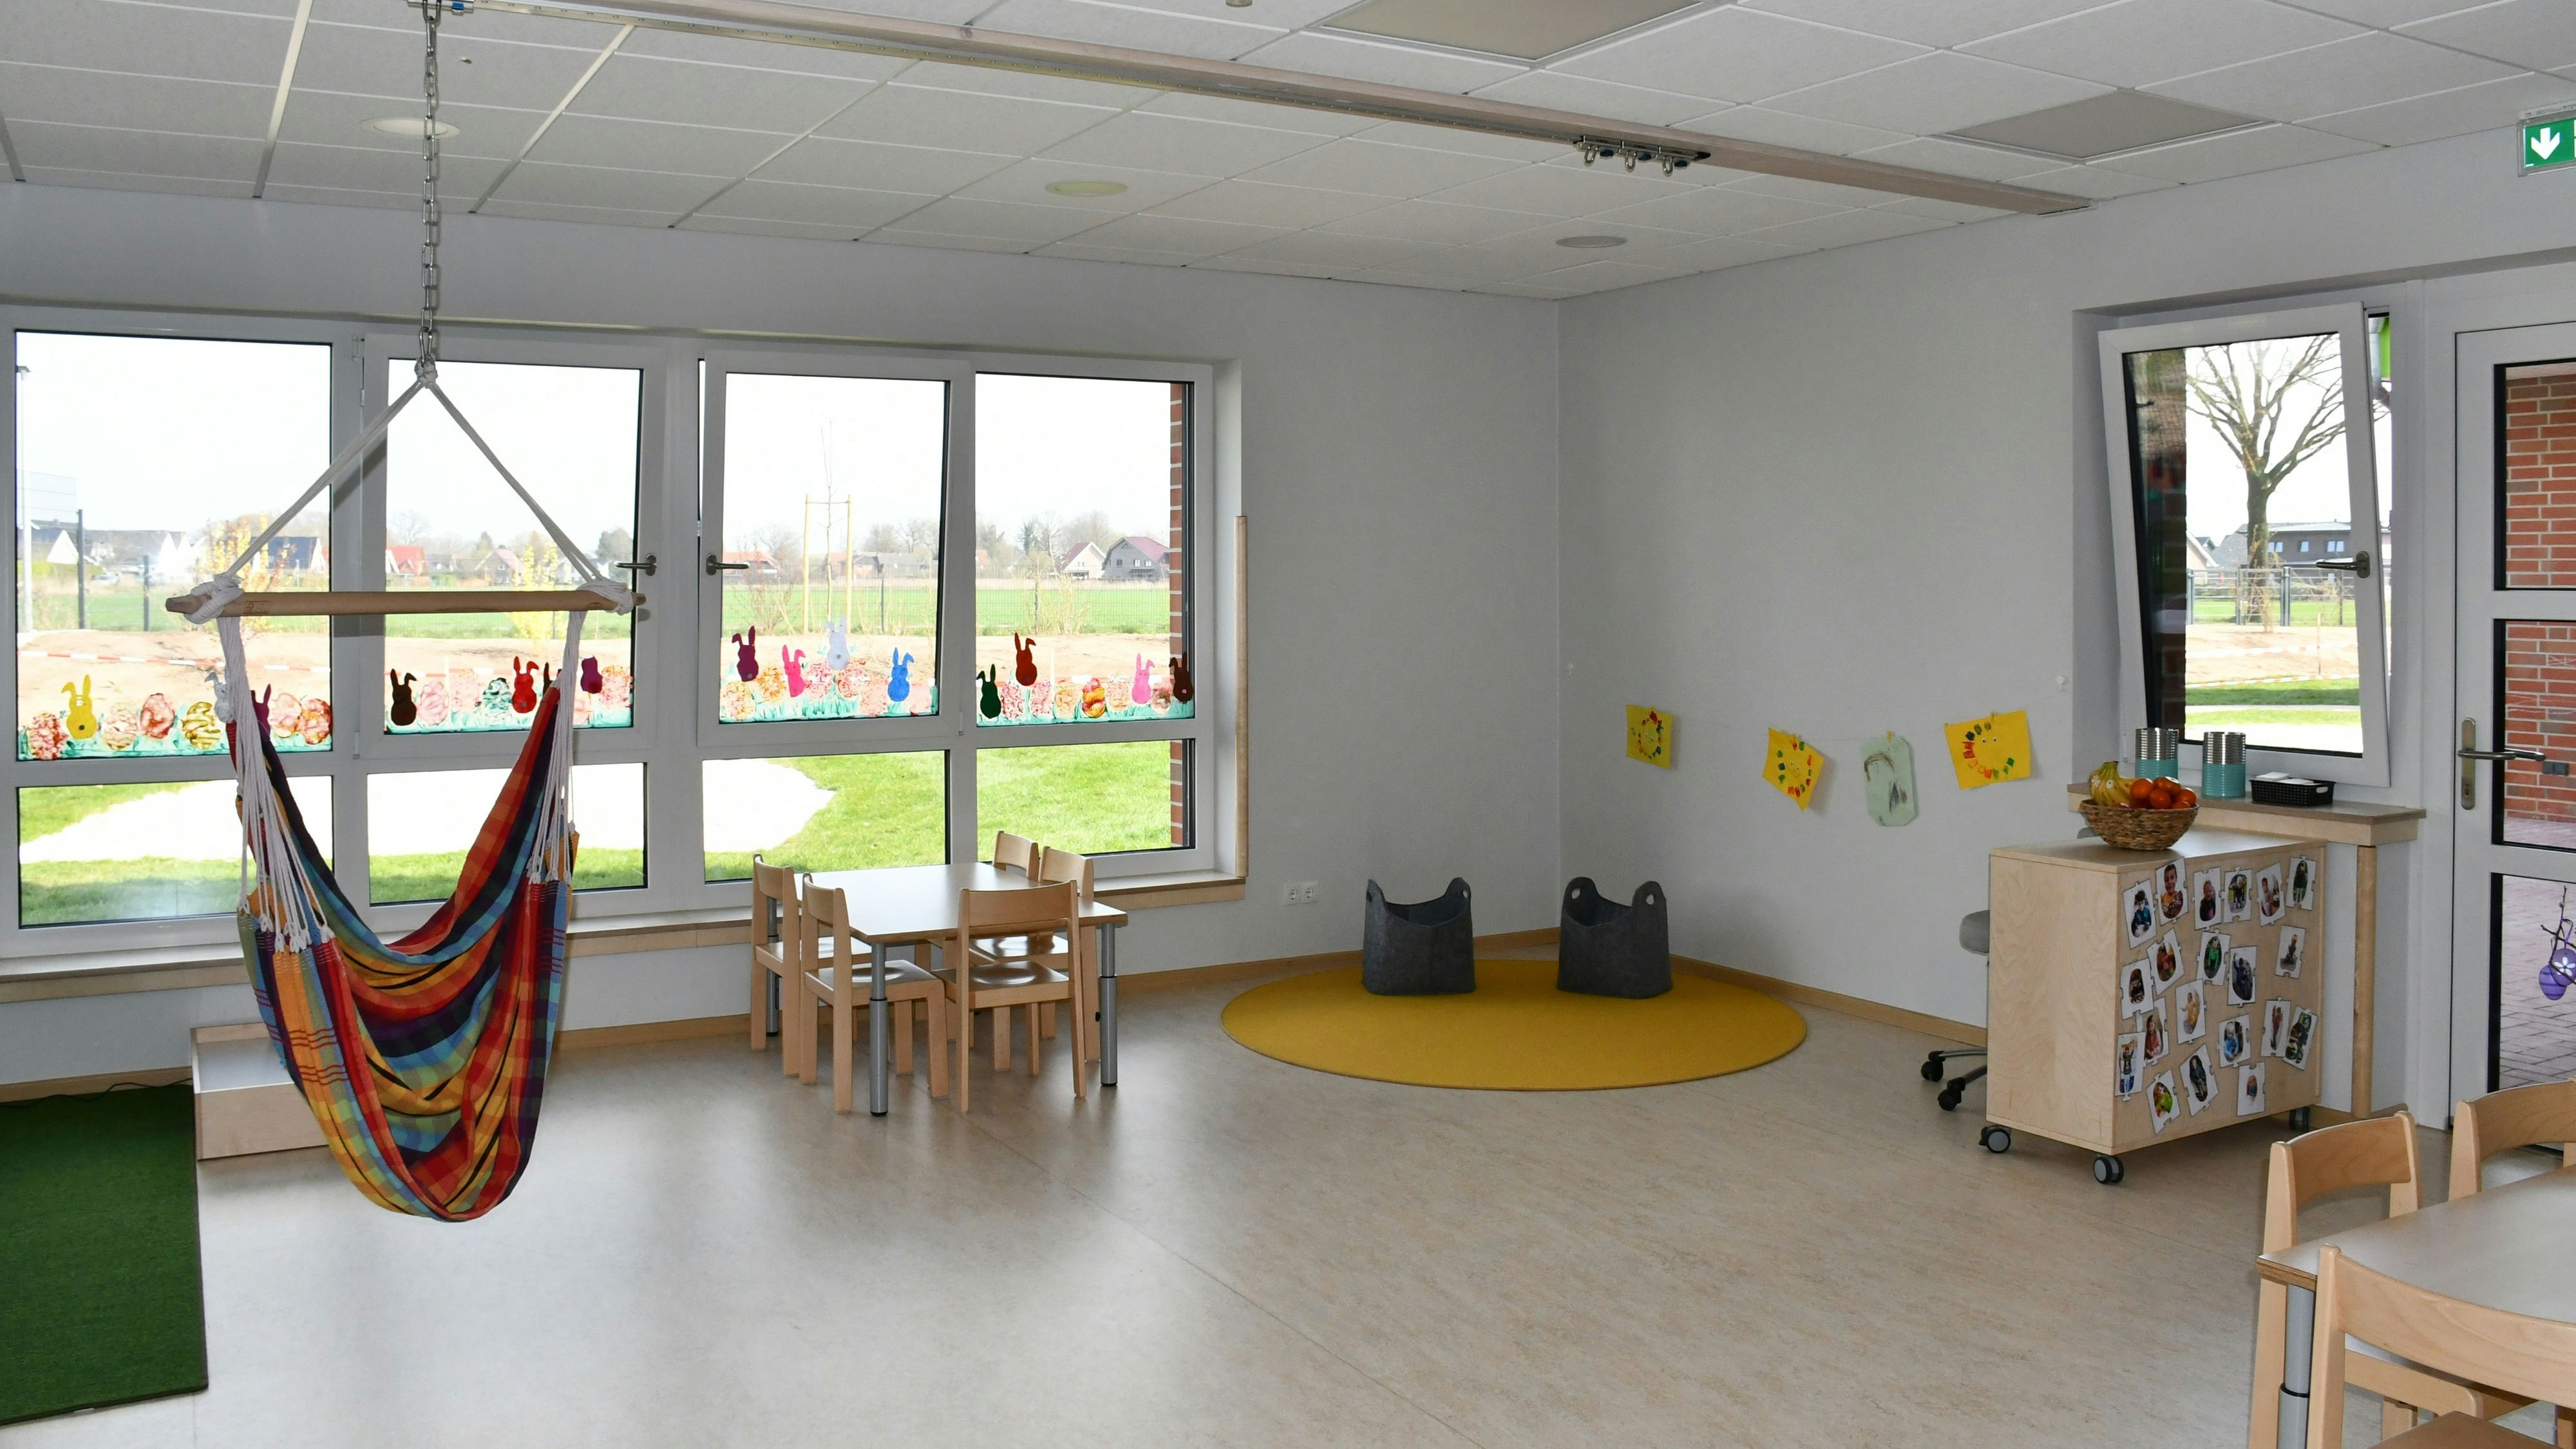 Erst Ende März eröffnet: Die neue Kindertagesstätte (Kita) Löwenzahn in der Eisenhutstraße in Cloppenburg. Archivfoto: Hermes